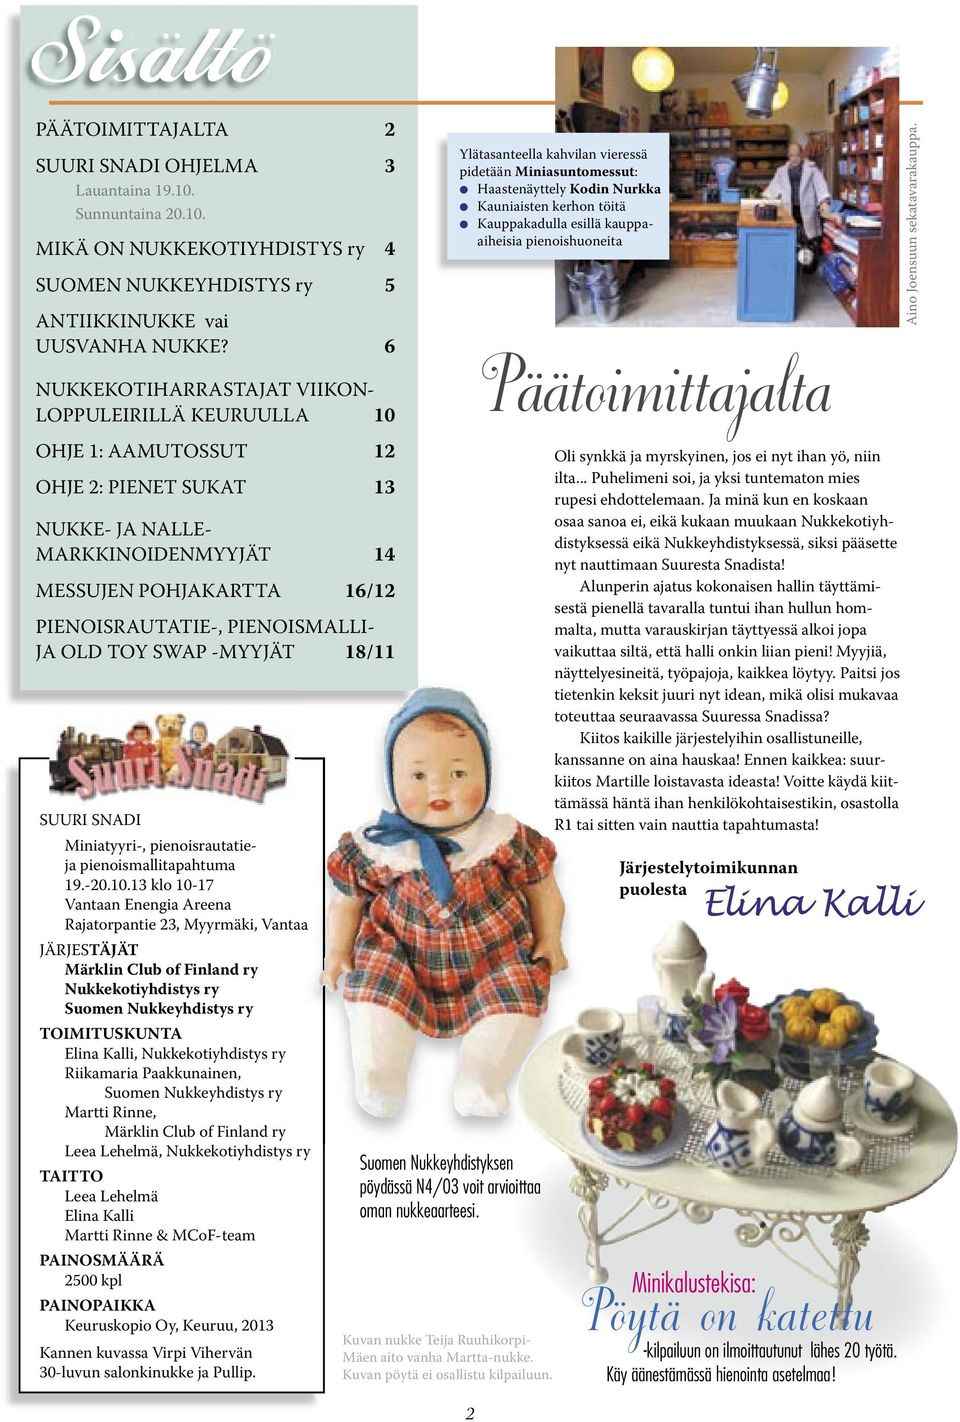 PIENOISMALLI- JA OLD TOY SWAP -MYYJÄT 18/11 SUURI SNADI Miniatyyri-, pienoisrautatieja pienoismallitapahtuma 19.-20.10.